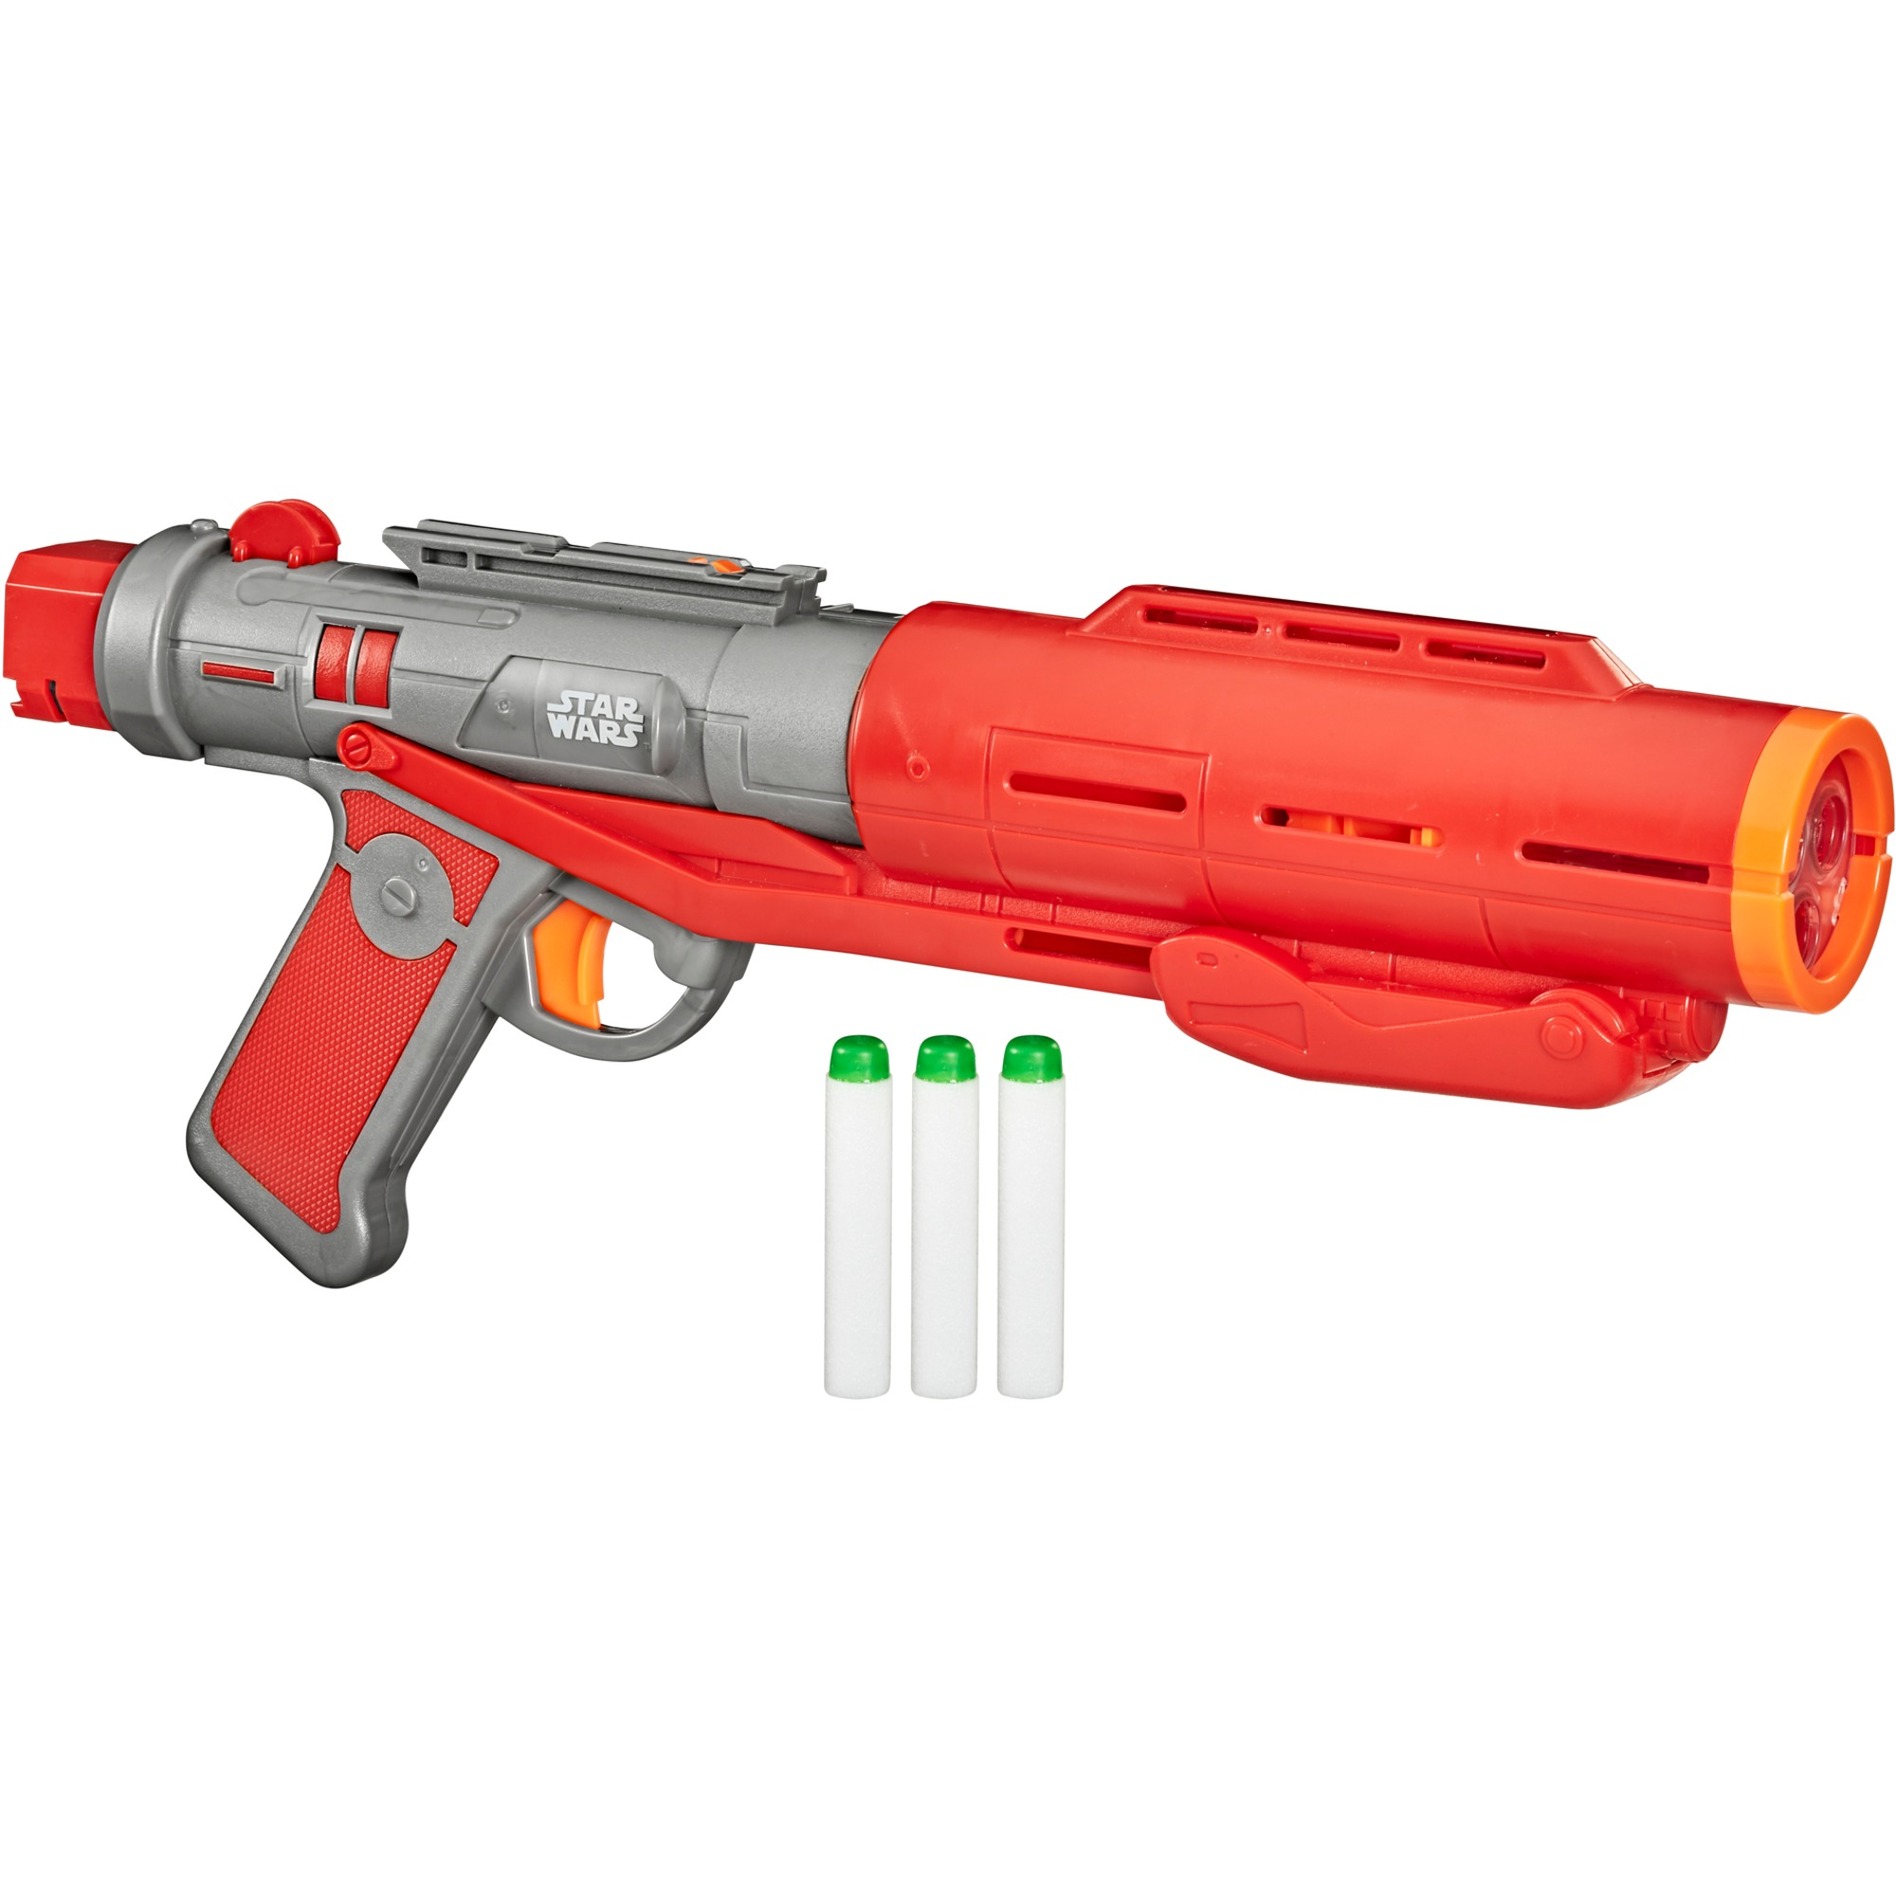 Image of Alternate - Nerf Star Wars The Mandalorian Imperial Death Trooper Deluxe Blaster, Nerf Gun online einkaufen bei Alternate